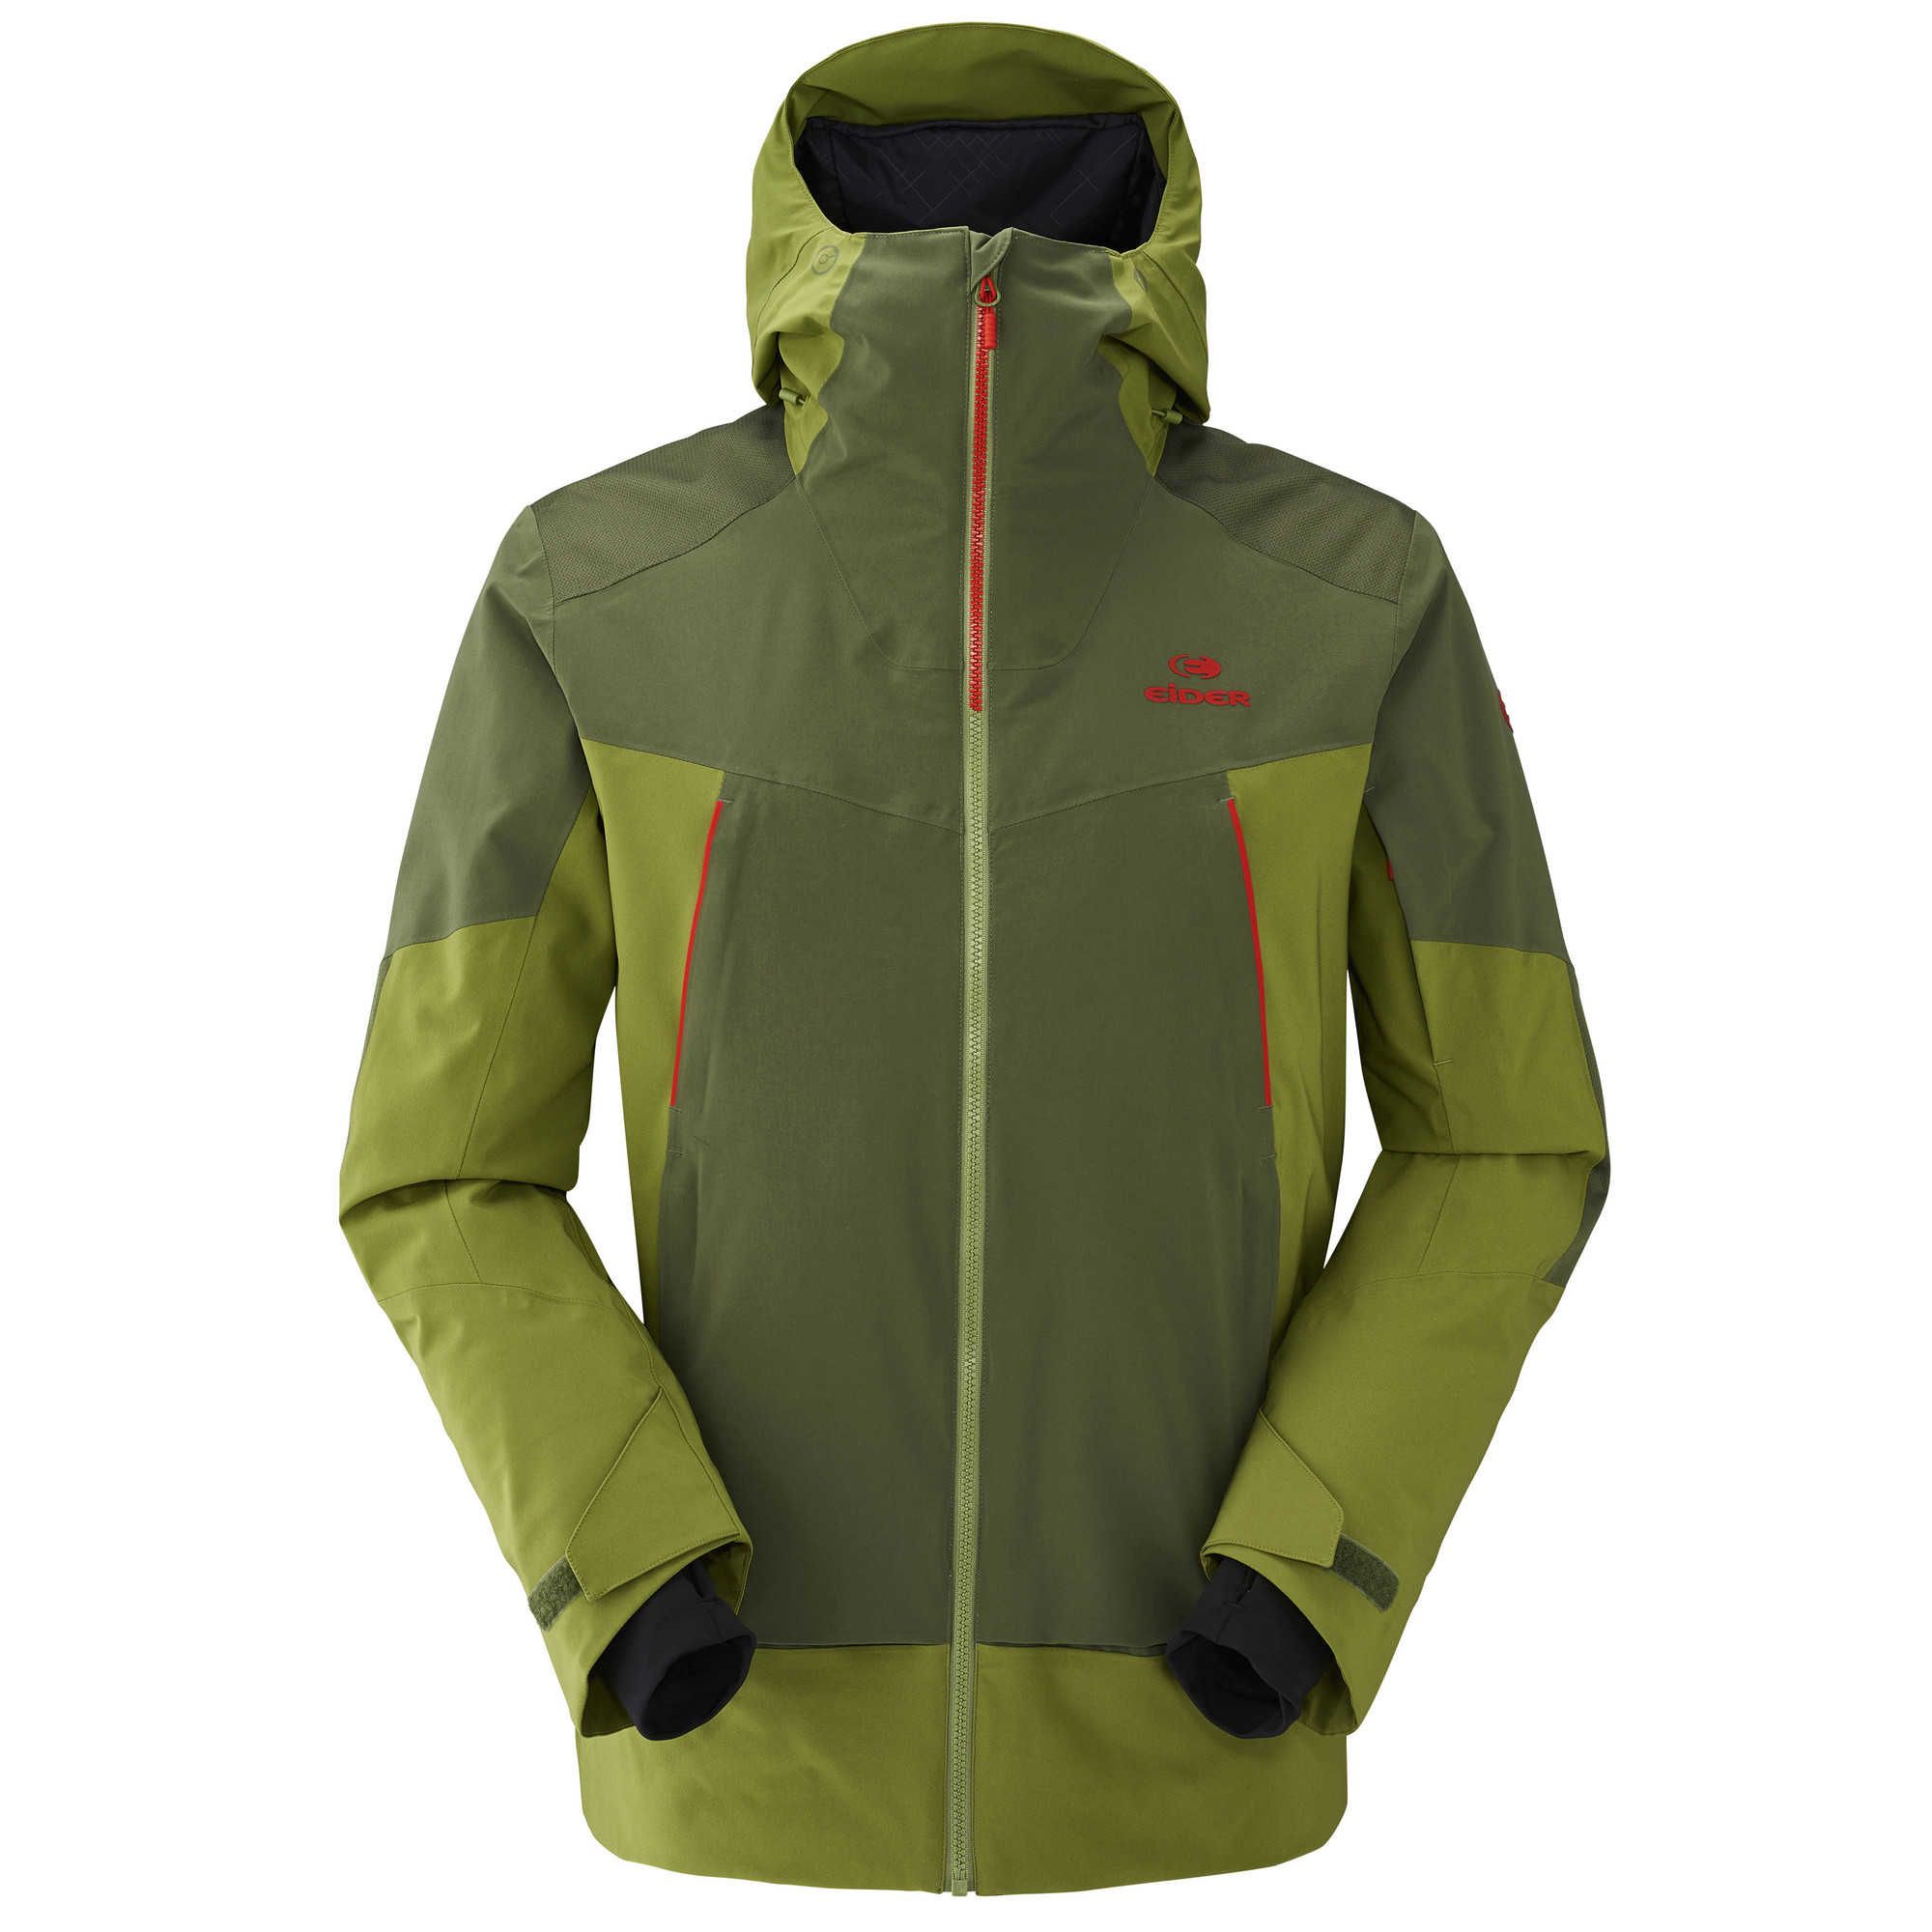 Veste ski Homme Rocker Jacket M - Spruce Green/Moss Green